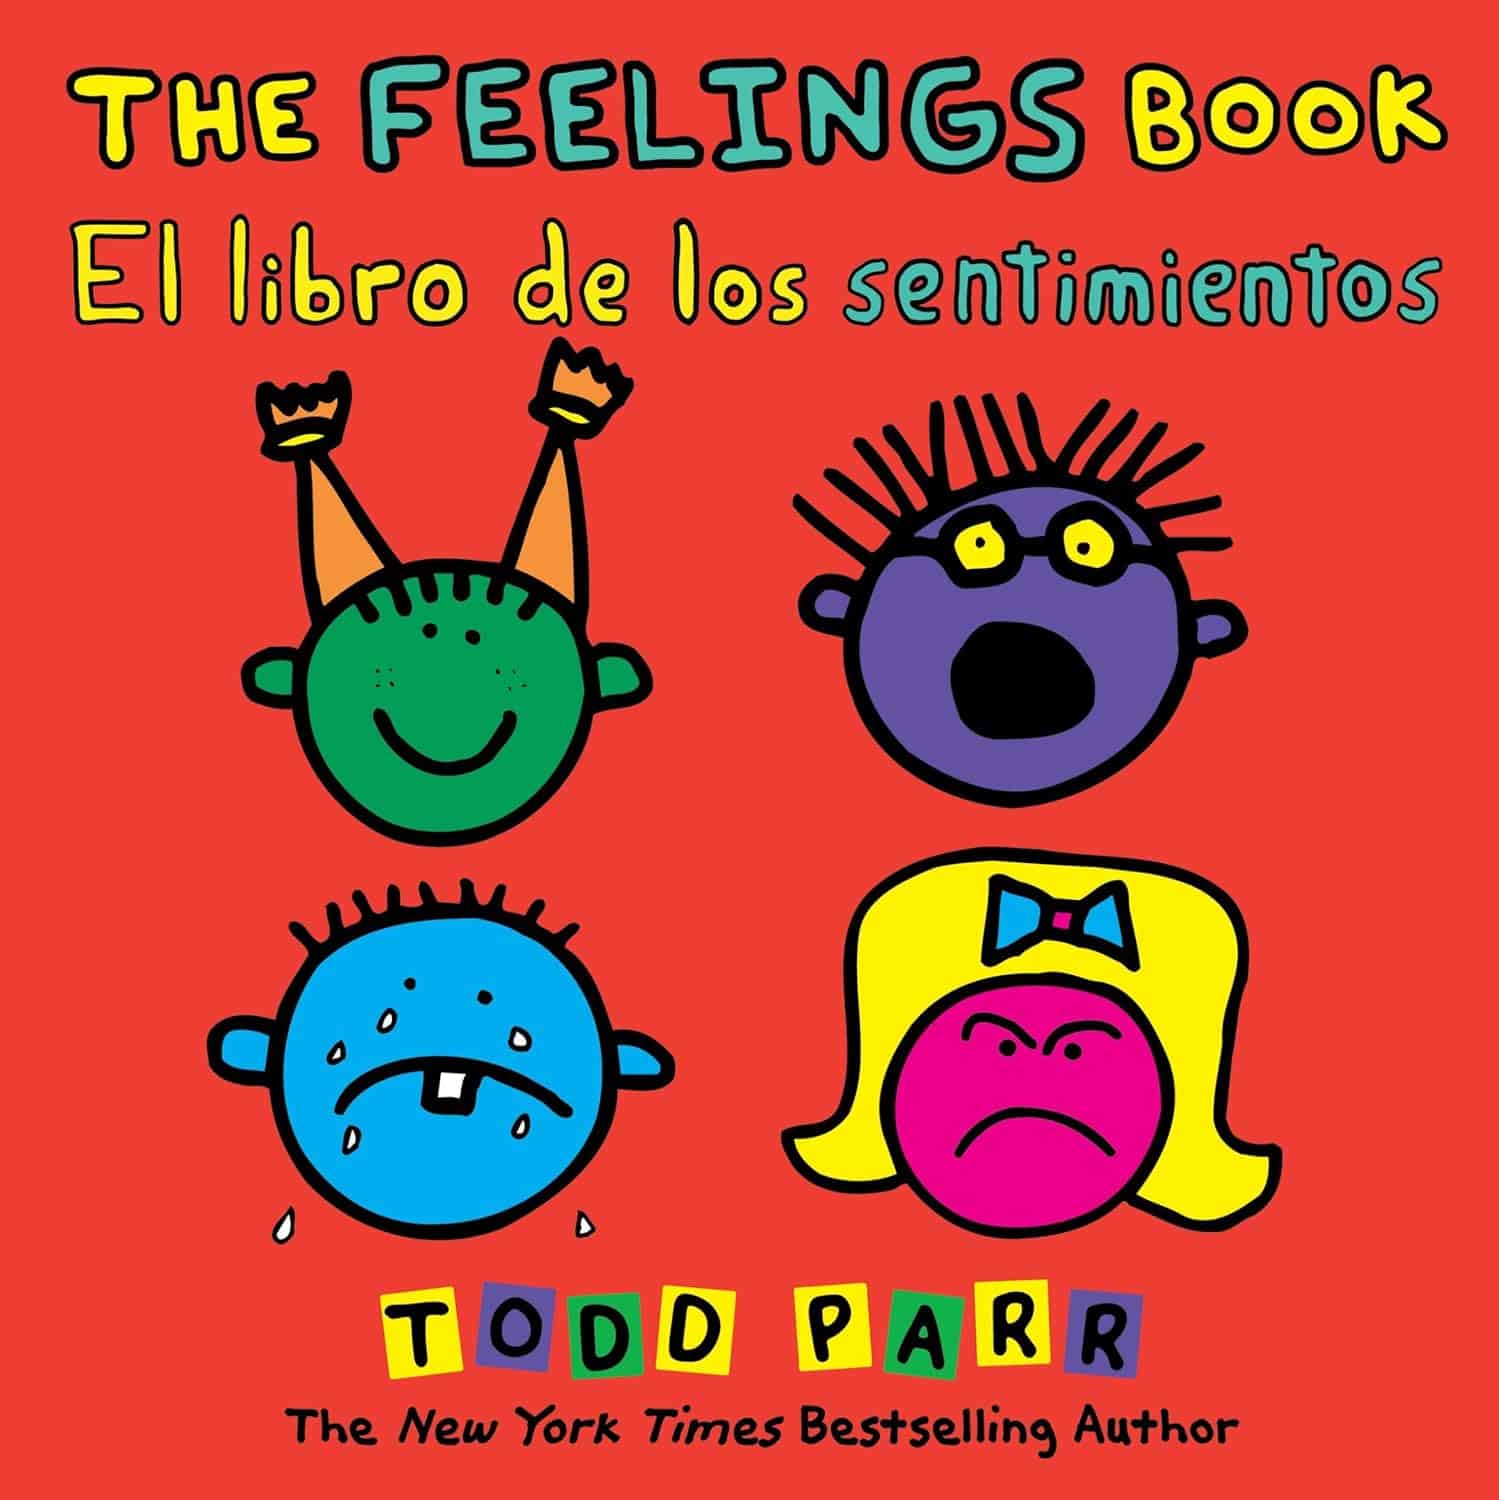 The Feelings Book El libro de los sentimientos by Todd Parr